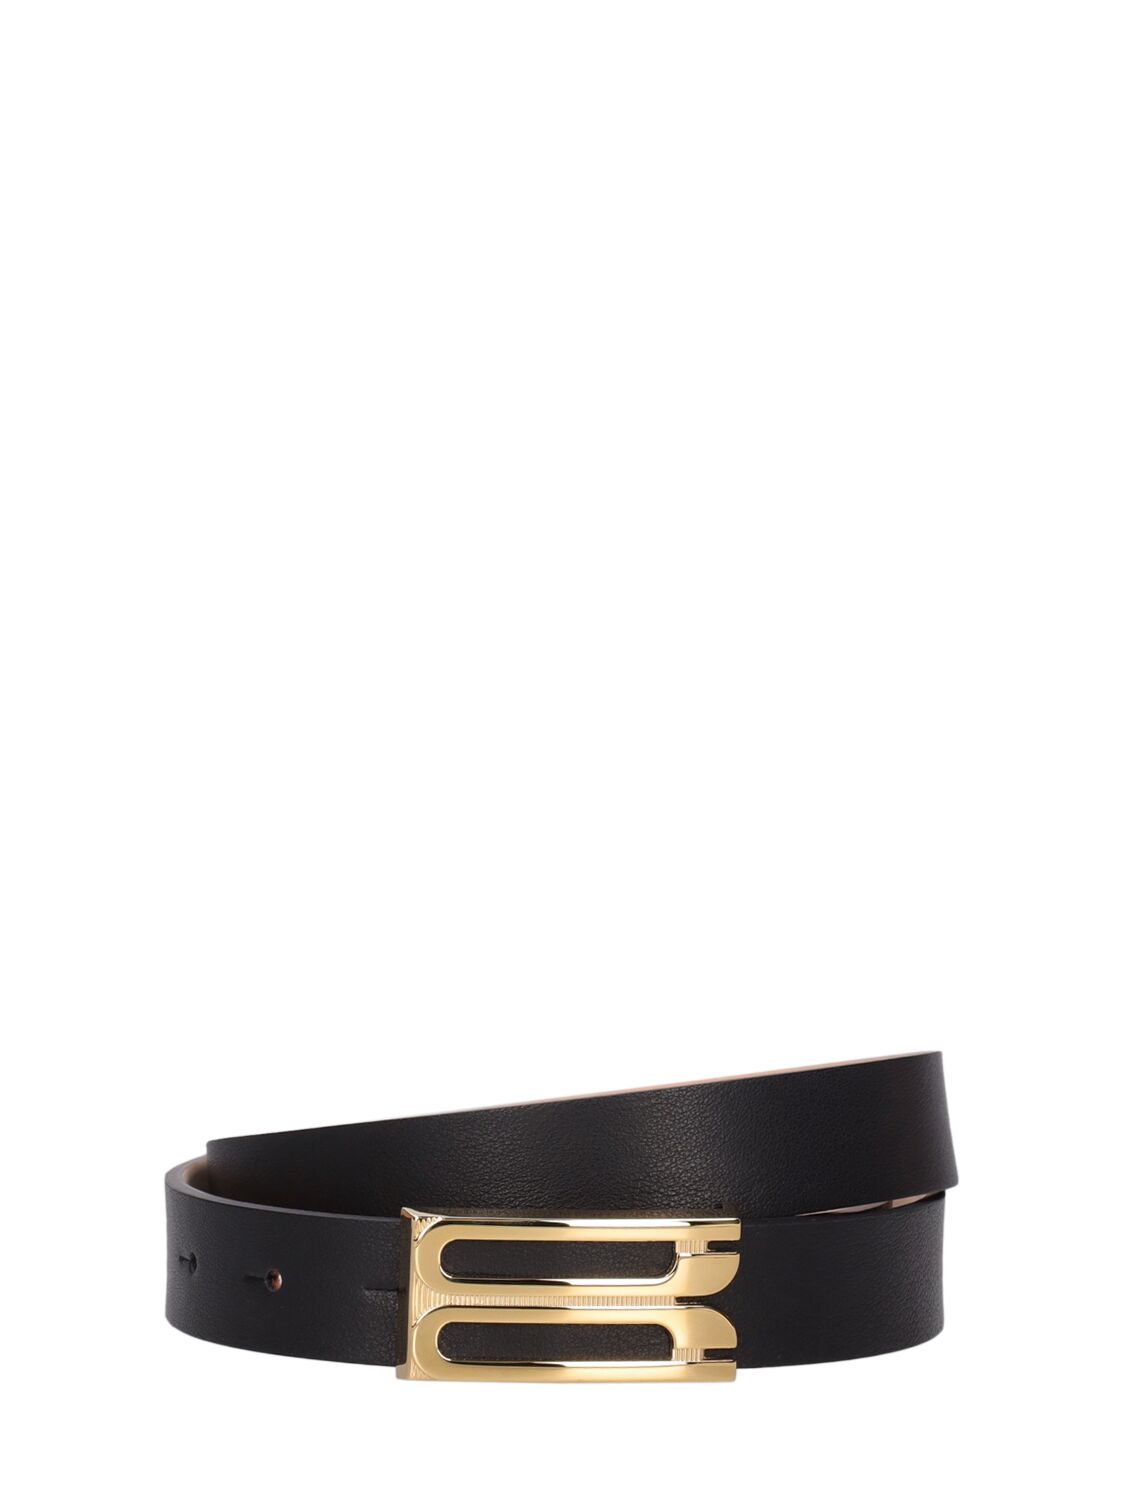 Victoria Beckham Regular Frame Leather Belt In Black